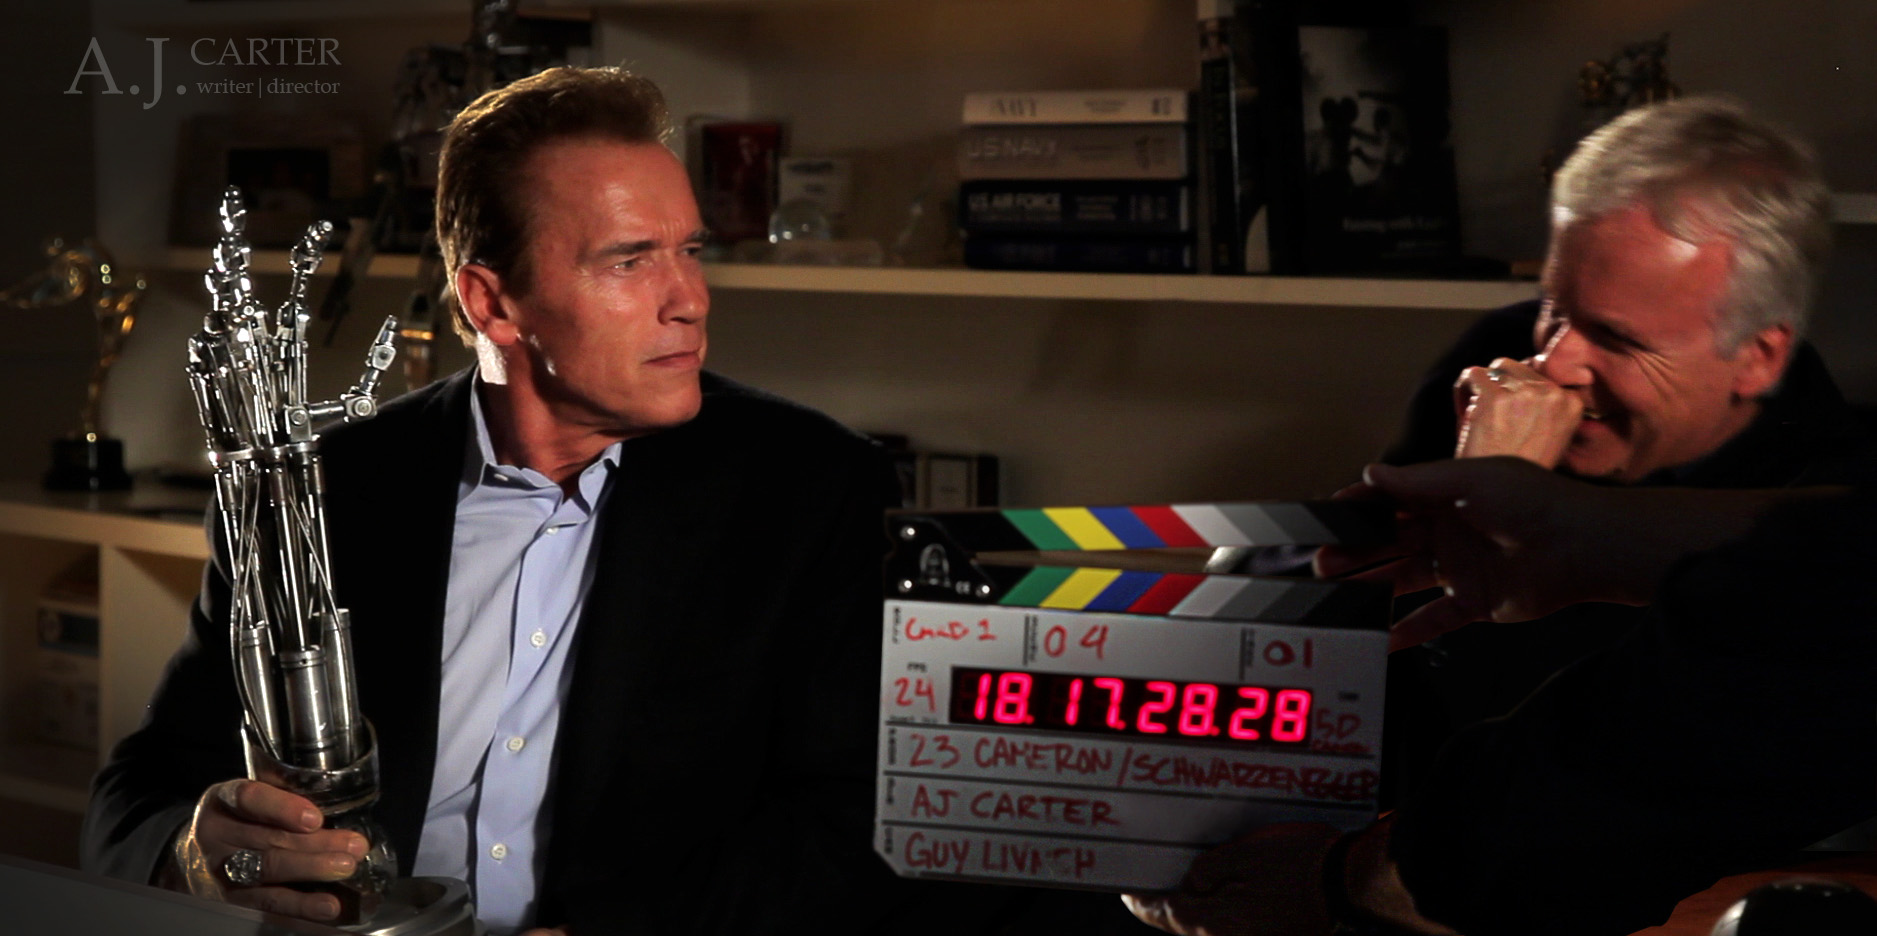 Filming '23'. Arnold Schwarzenegger, James Cameron. Director- A.J. Carter. Hollywood, California. 2010